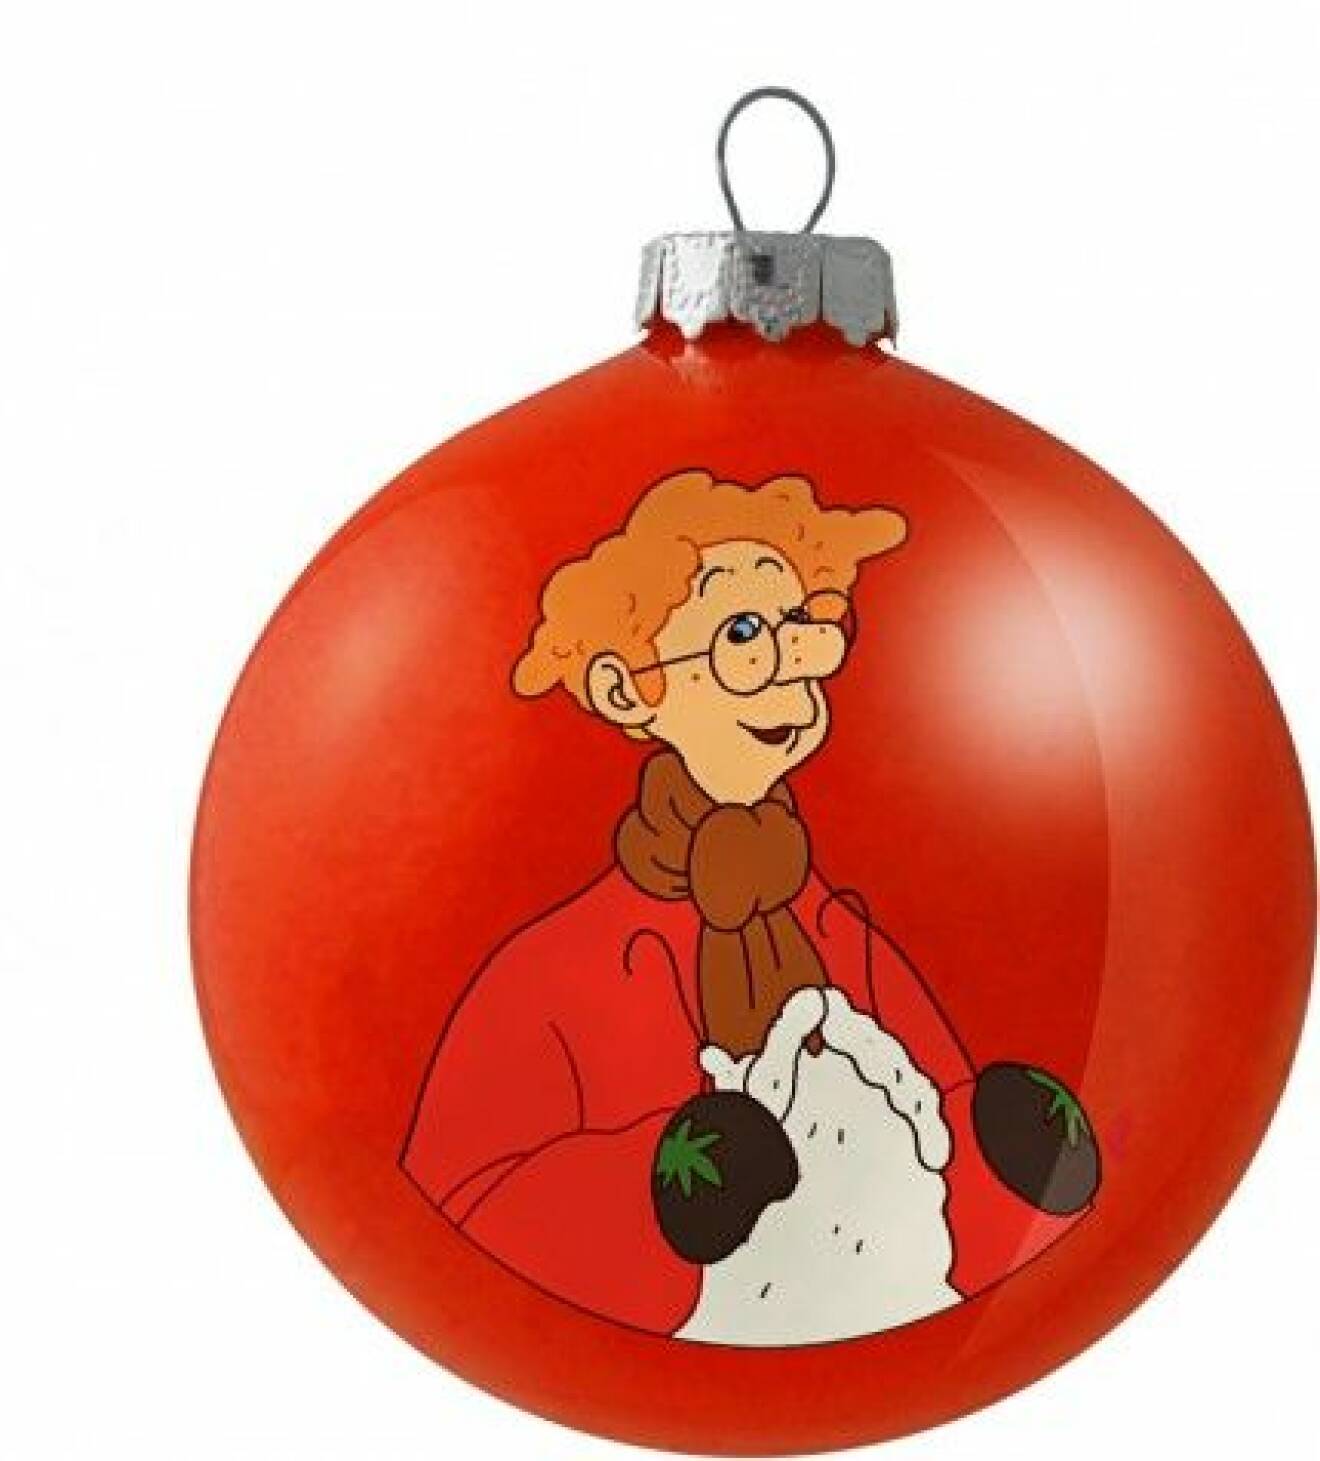 3 Årets julkula som säljs till förmån för Unicefs arbete har en bild på Karl-Bertil Jonsson tecknad av Per Åhlin som dekor, 179 kr, i Unicefbutiken.